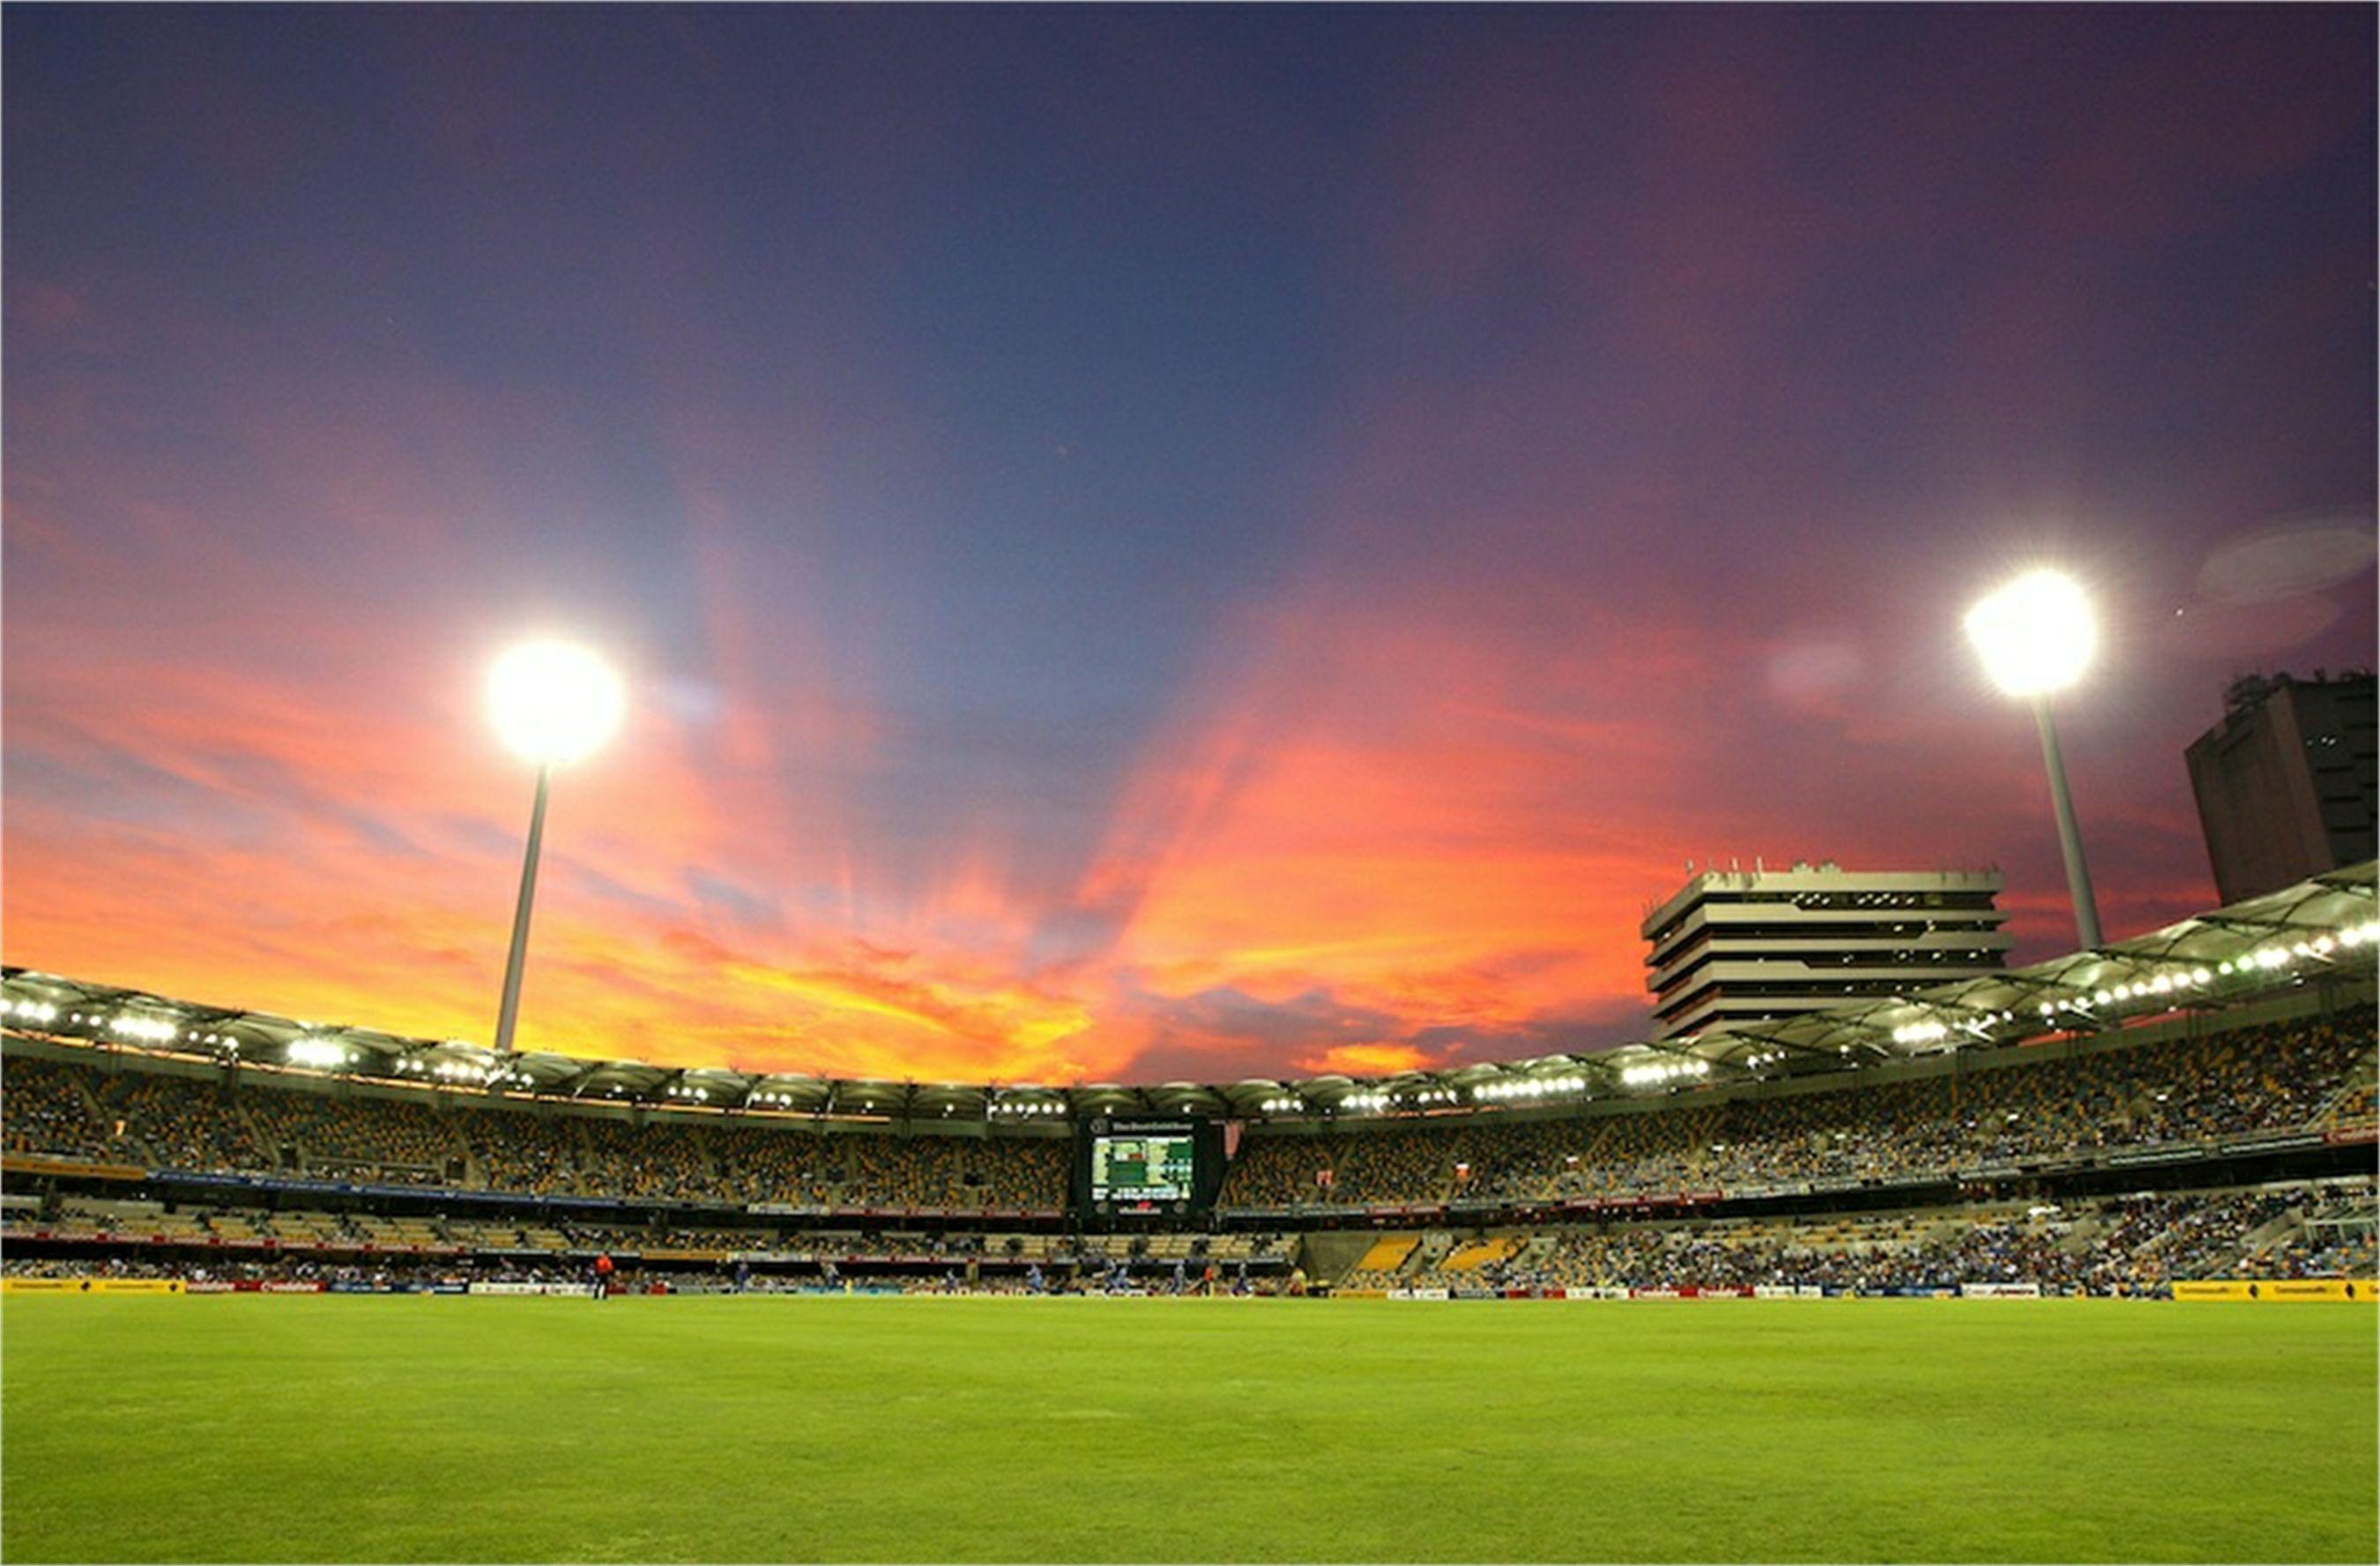 Brisbane Cricket Ground, Woolloongabba. My City Life